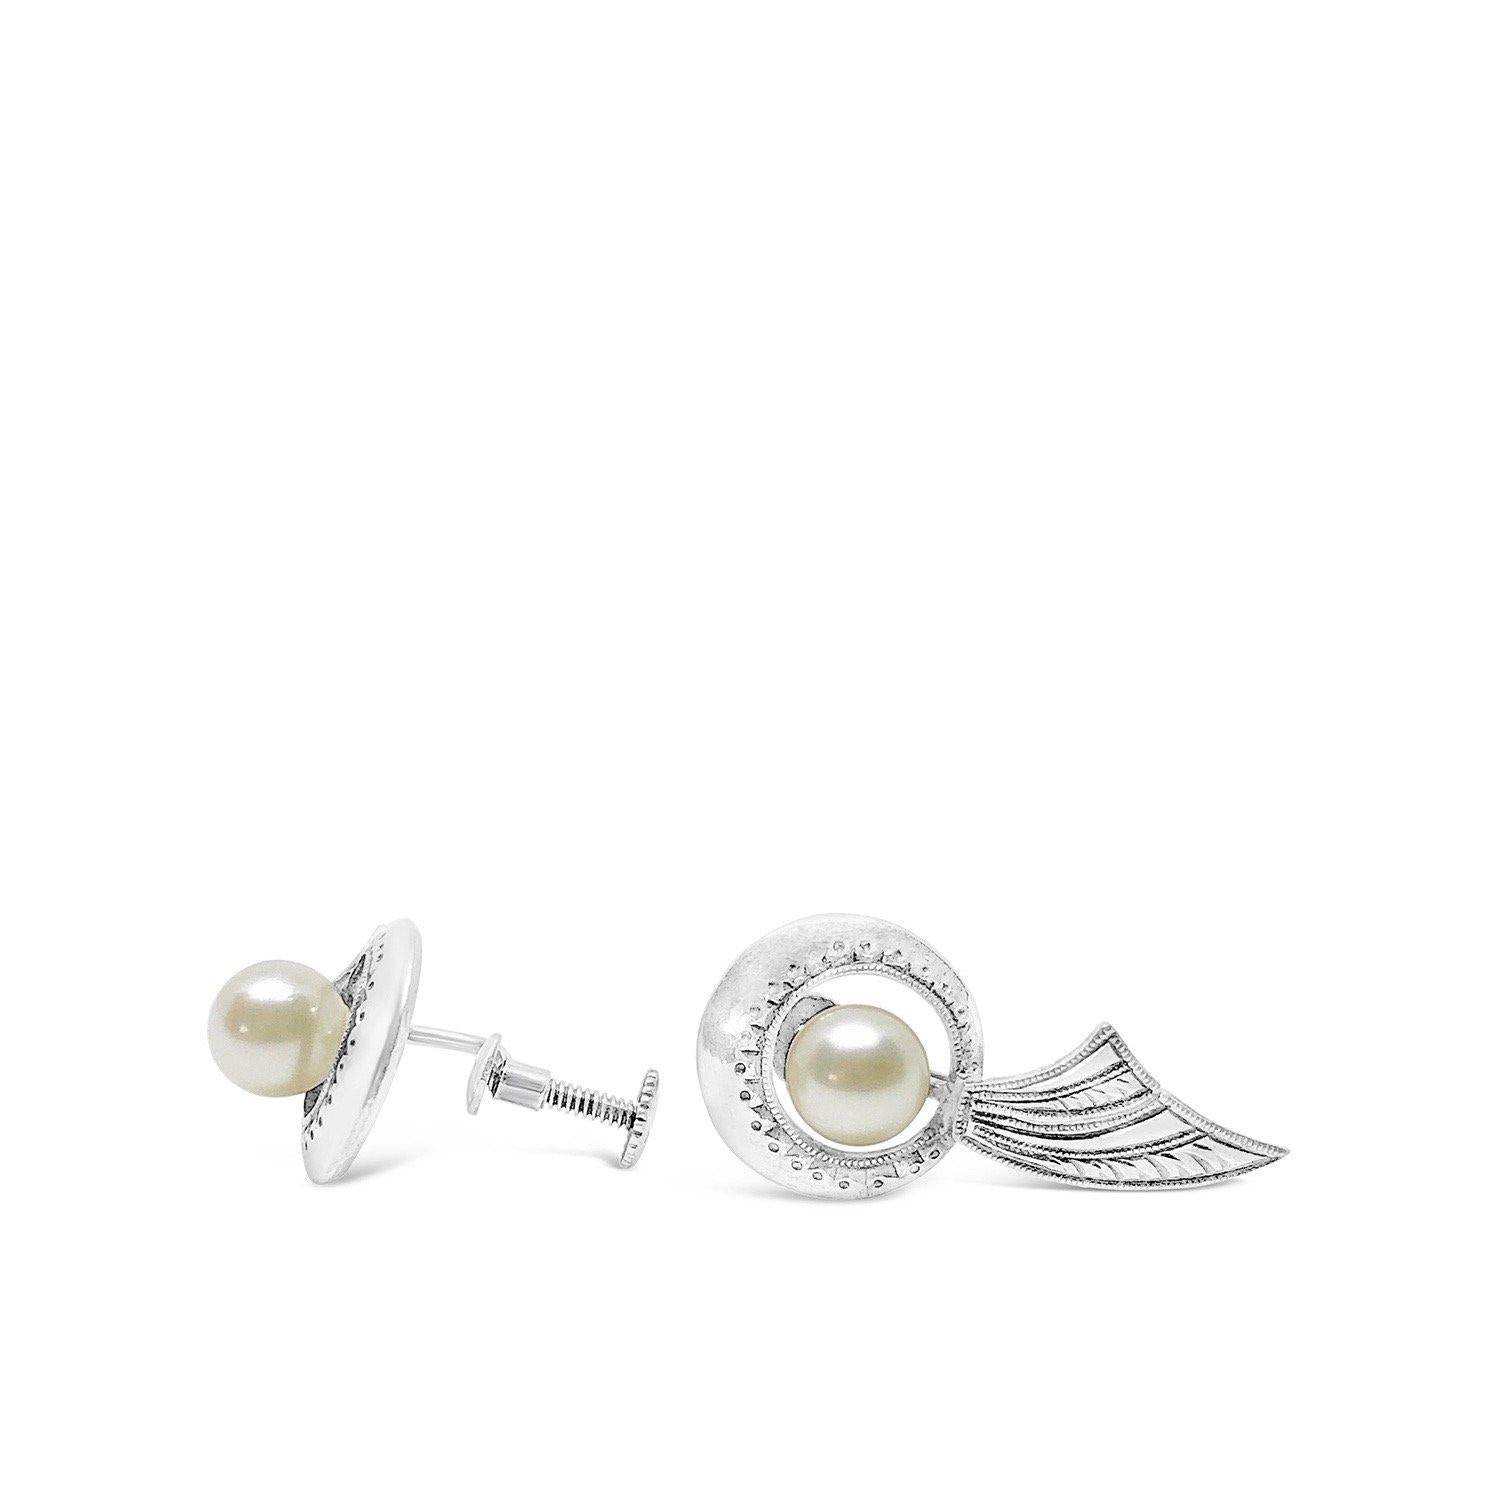 Engraved Akoya Saltwater Cultured Pearl Screwback Earrings- Sterling Silver